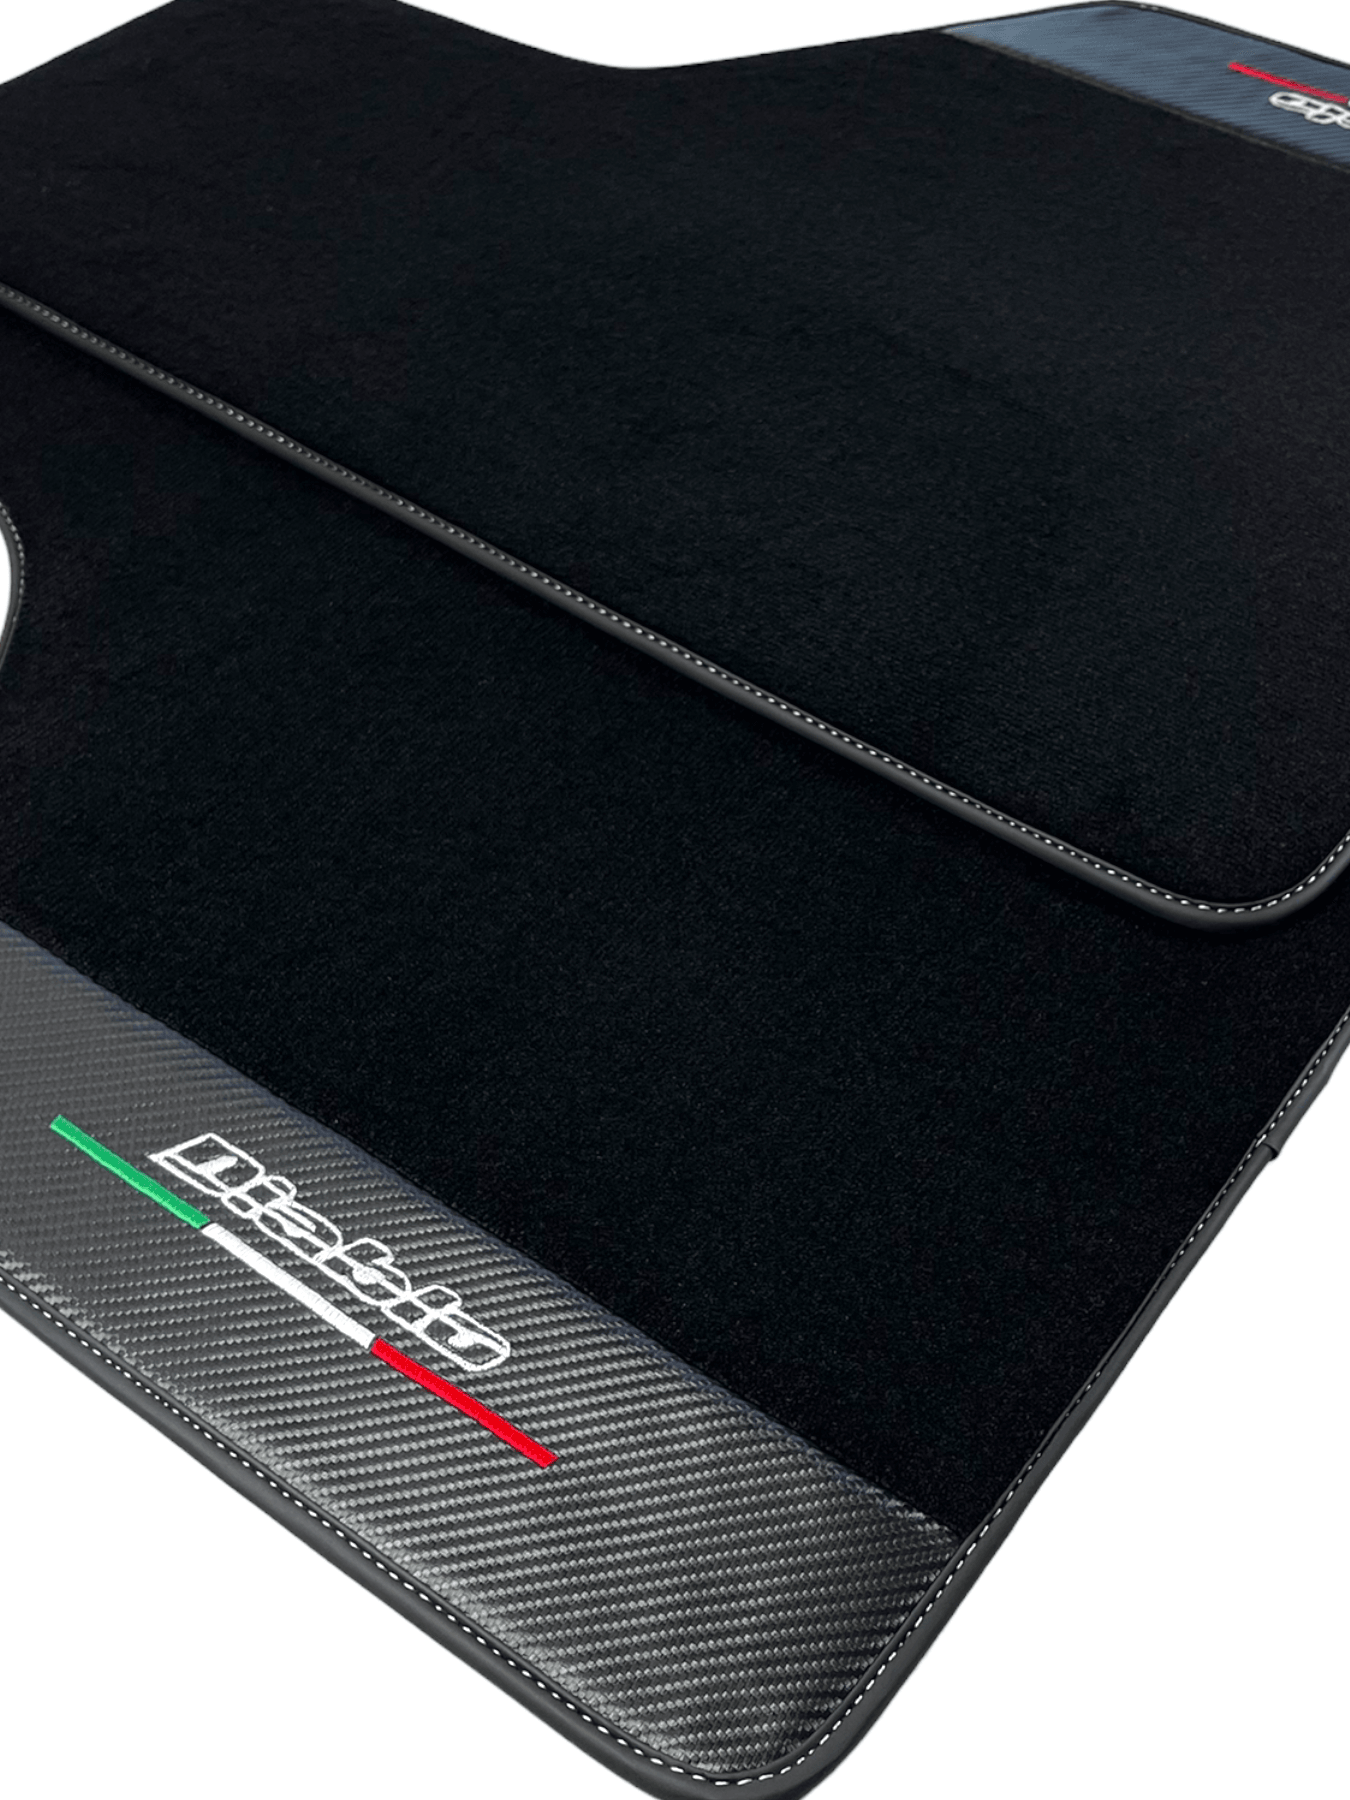 Black Floor Mats for Lamborghini Diablo 1990-2001 With Carbon Fiber Leather - AutoWin